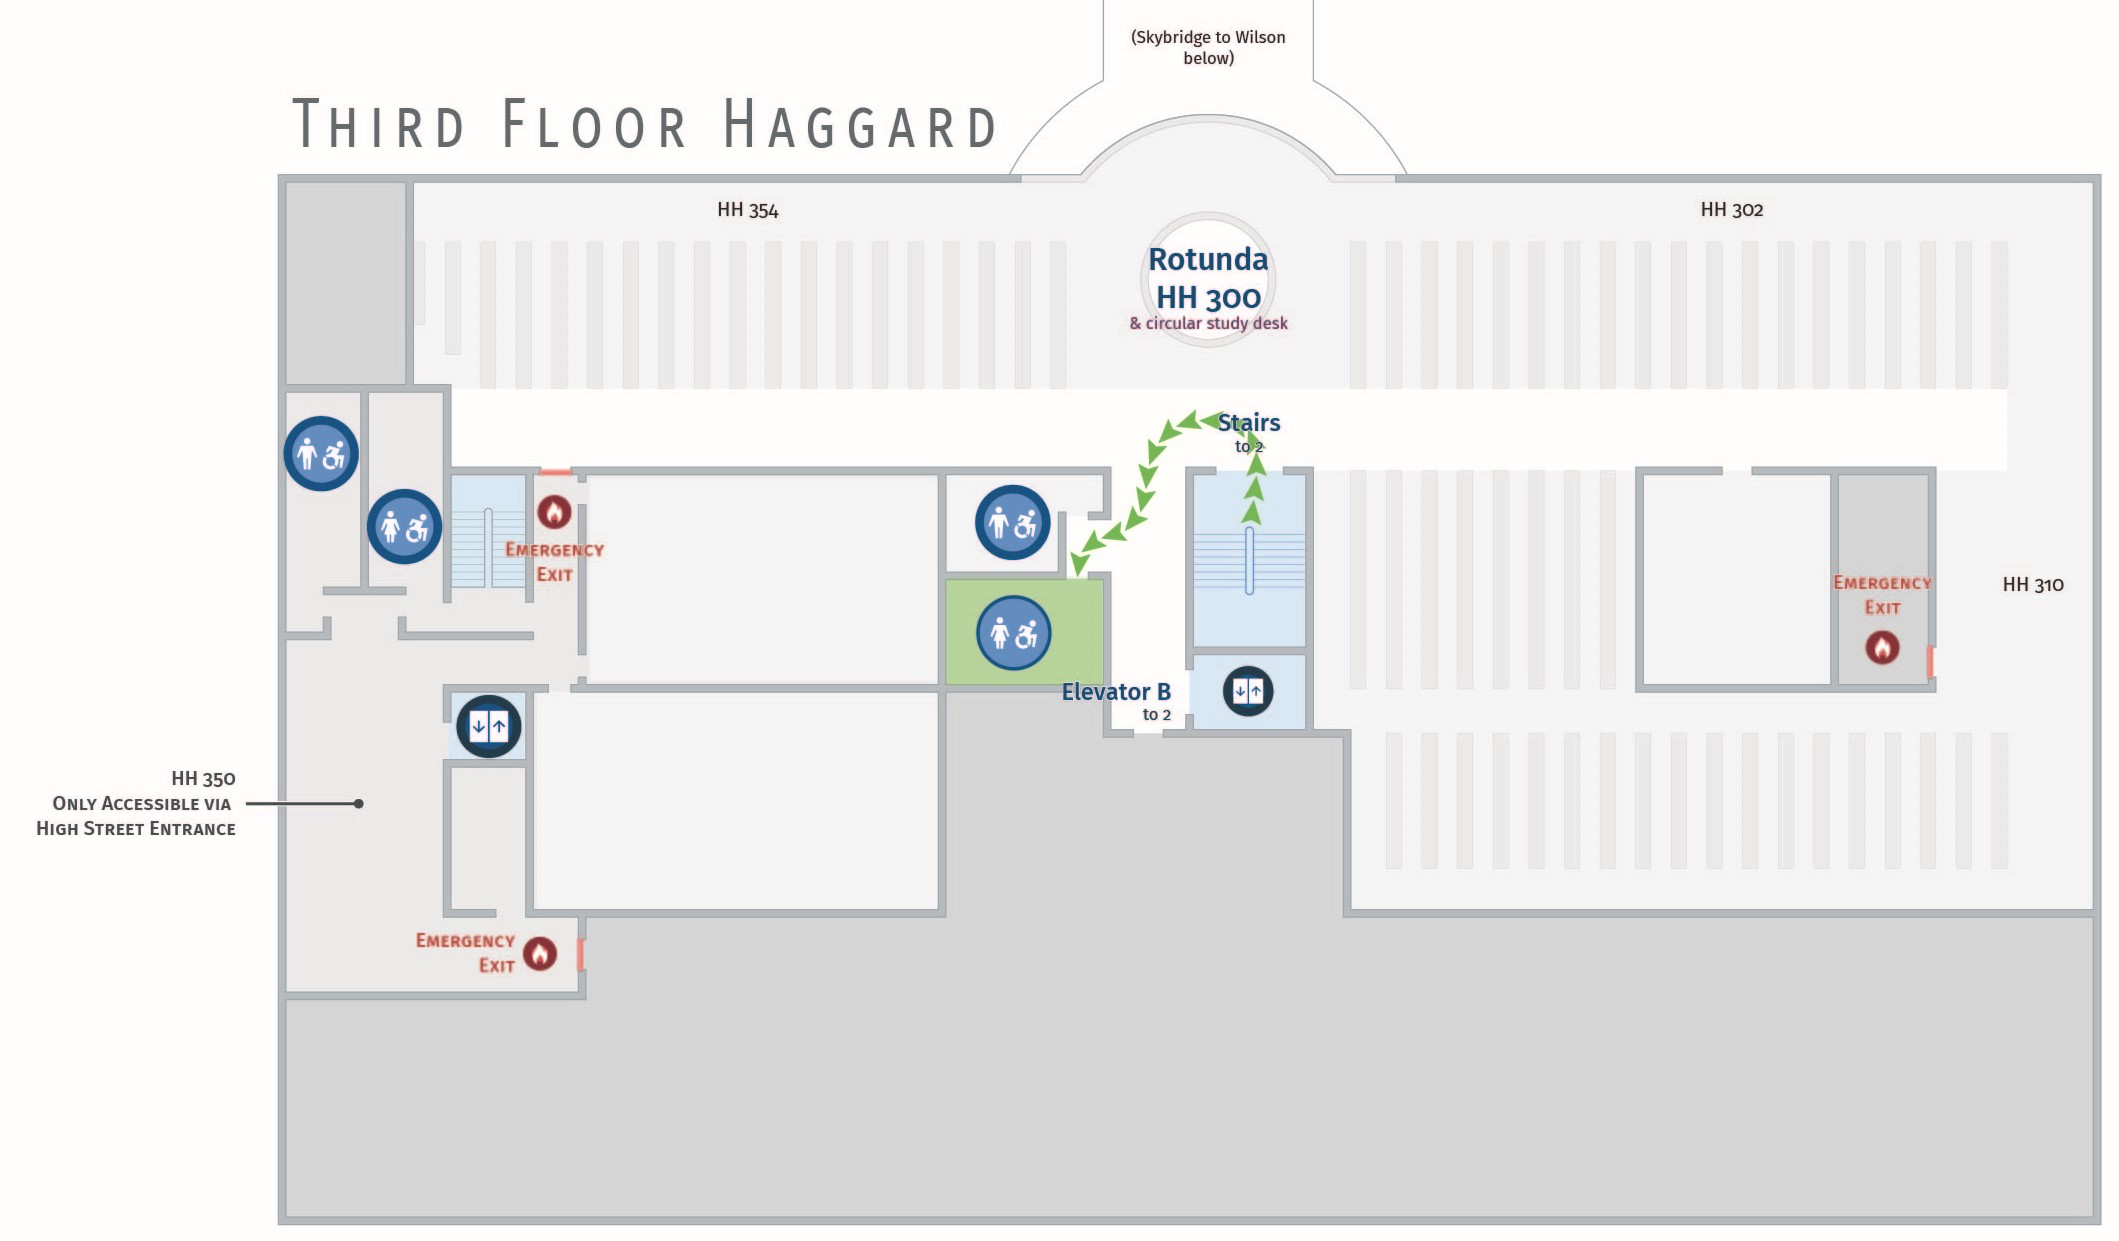 Floor plan, third floor of Haggard with path to women's restroom. Haggard 342.